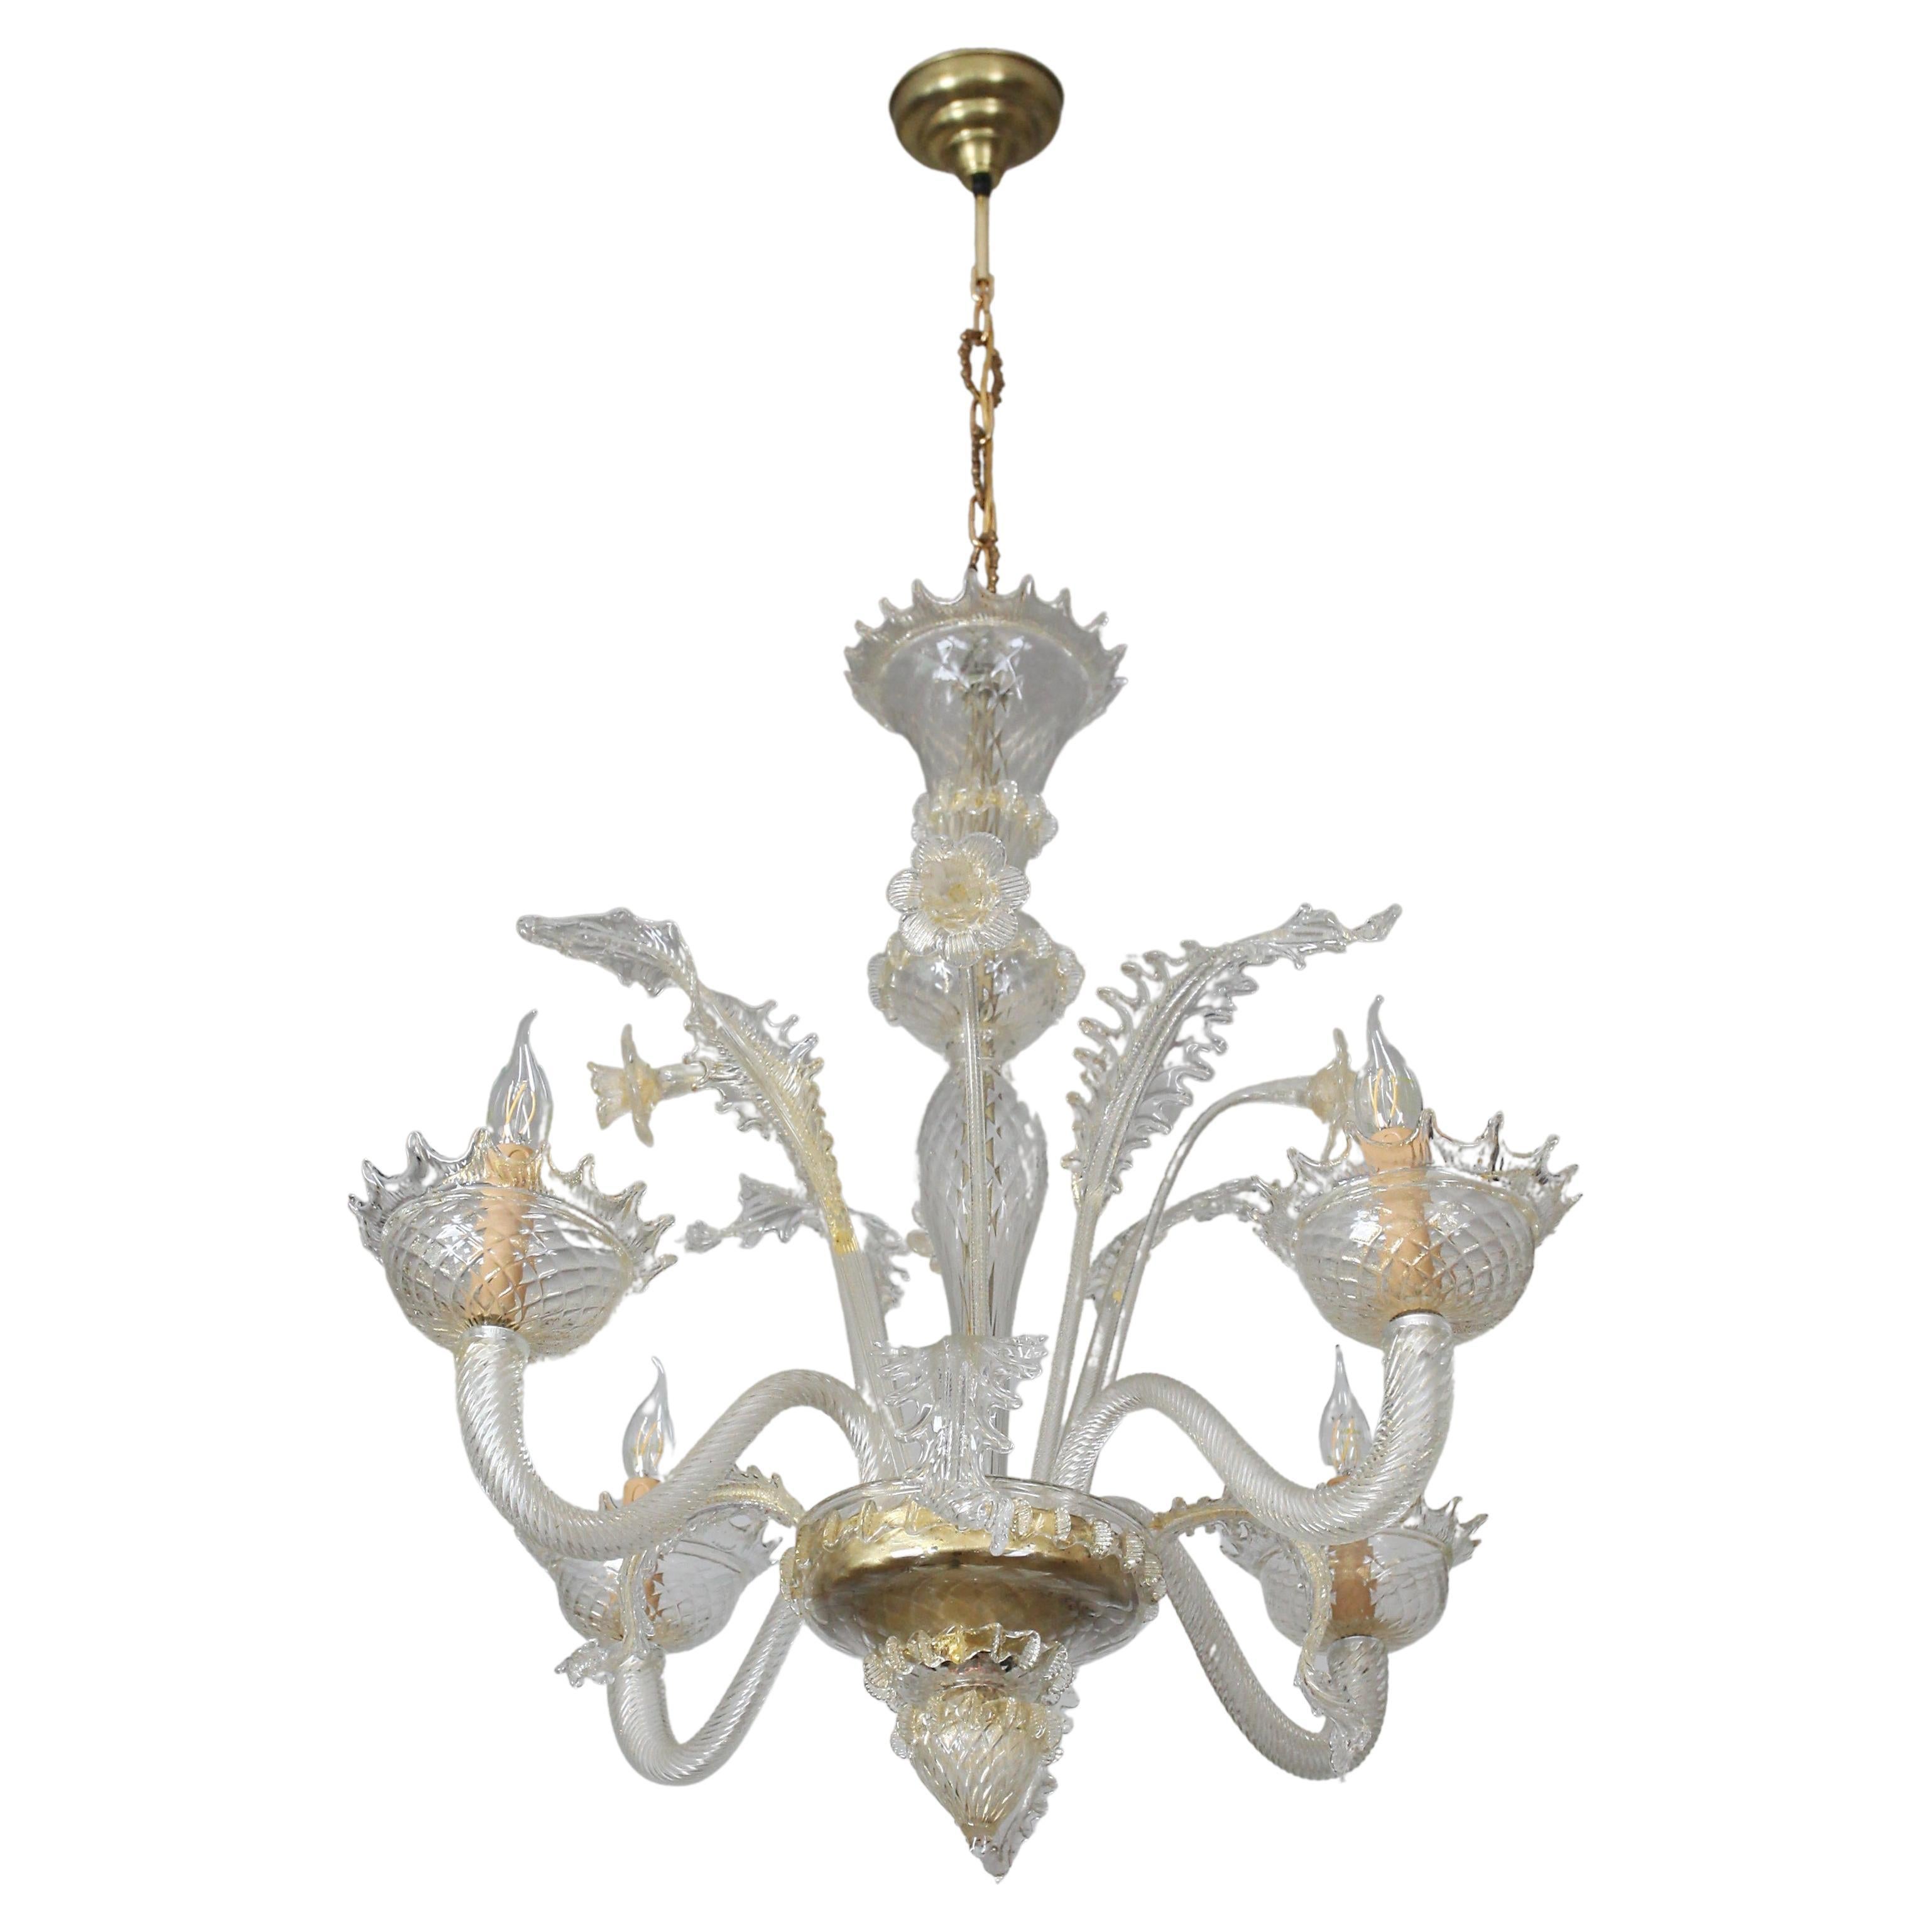 Venetian chandelier - restored